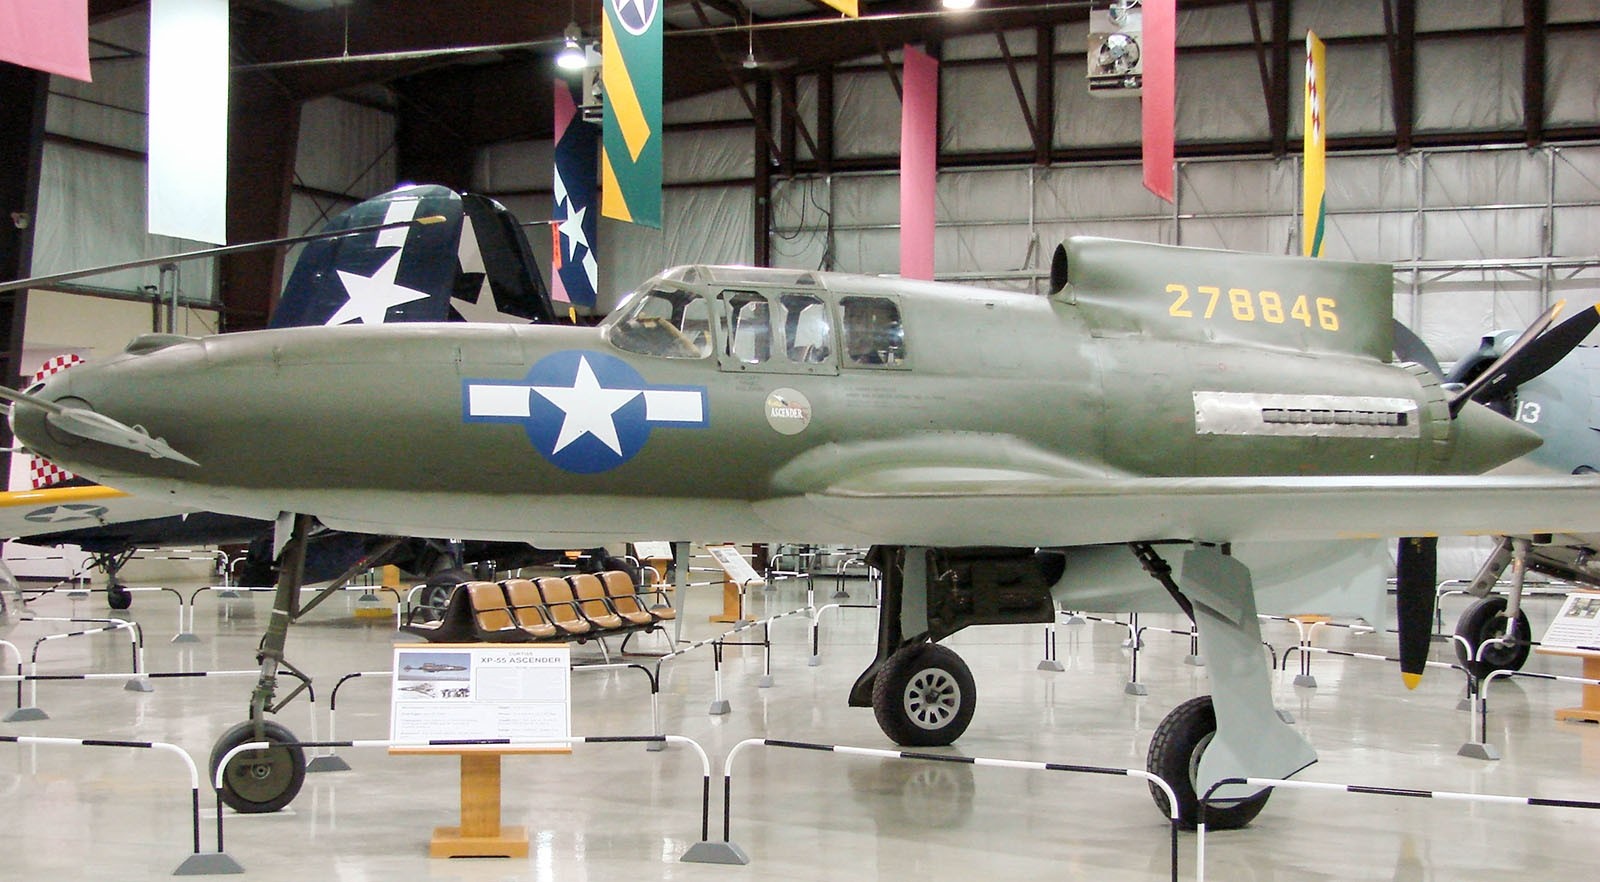 XP-55 Wznoszący się